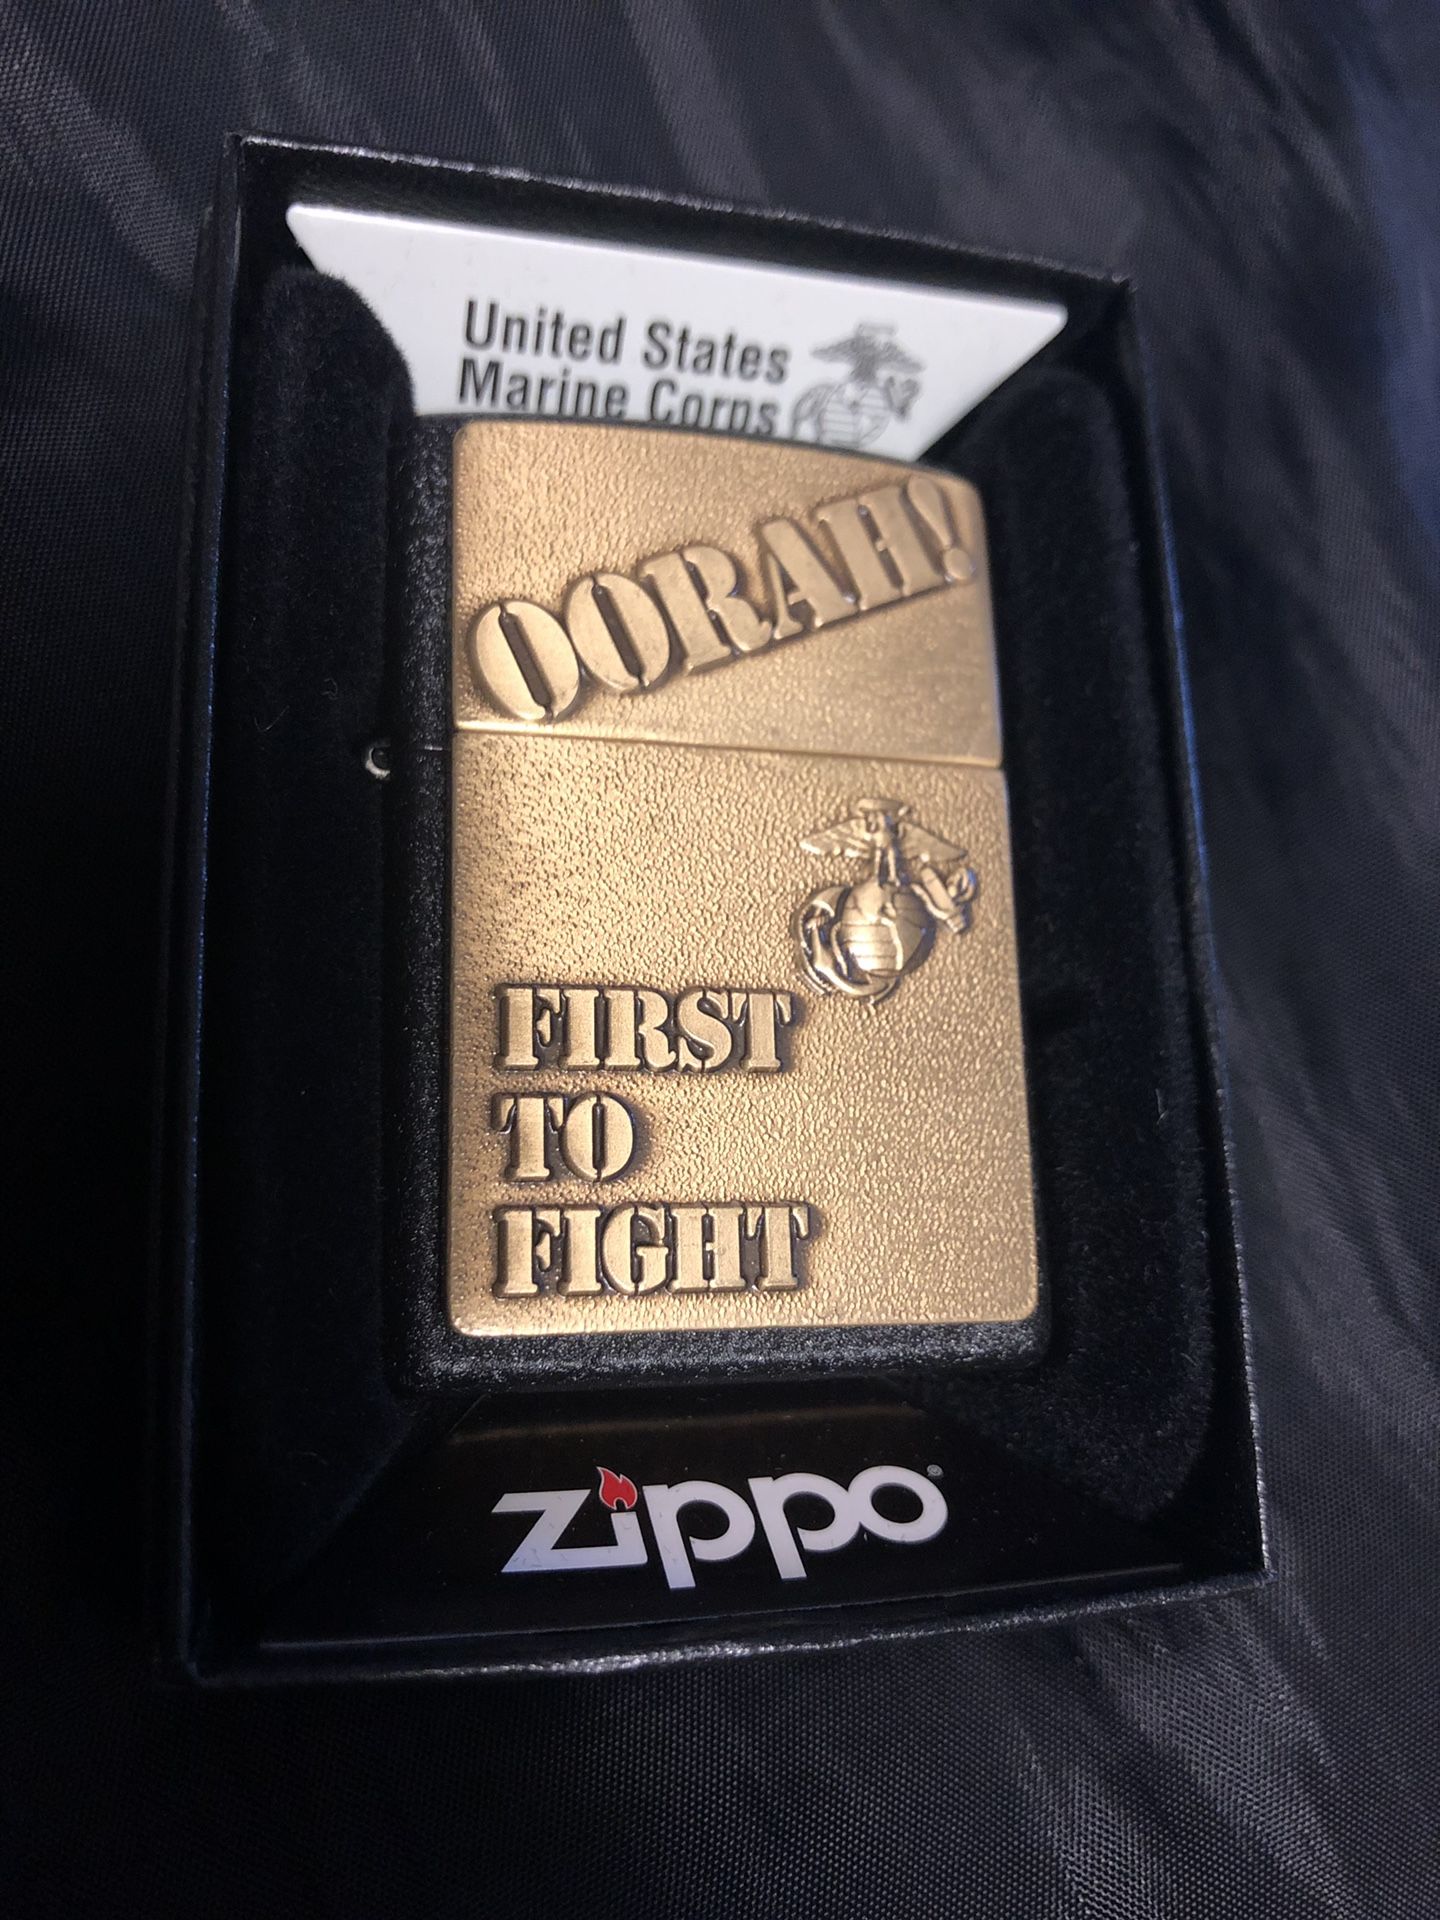 Genuine USMC Zippo lighter